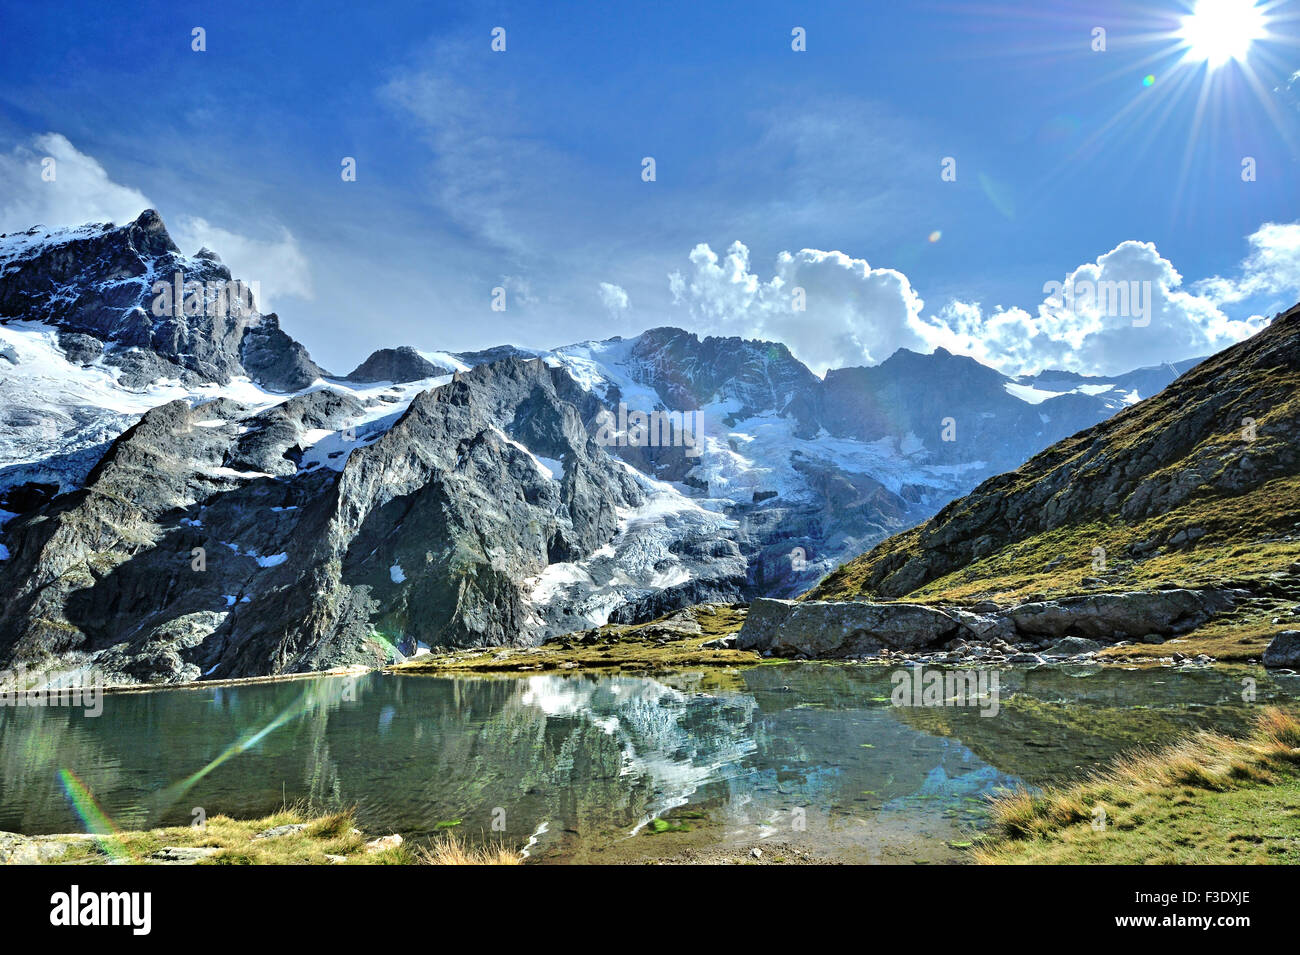 Panoramablick mit Reflexion der Gletscher von La Meije in einem künstlichen See auf halbe Höhe, Französische Alpen, Frankreich Stockfoto